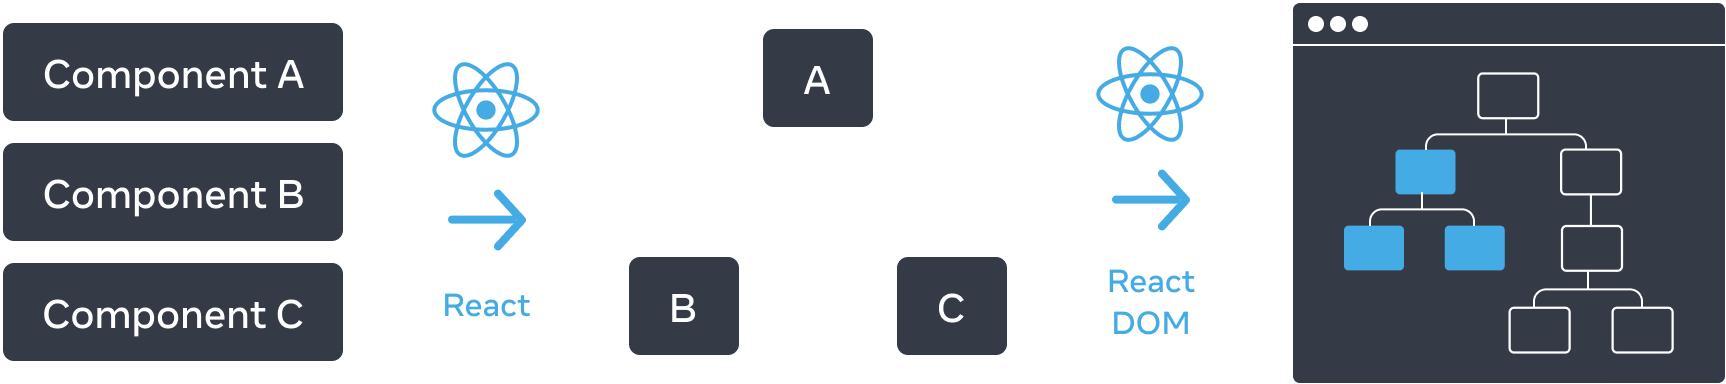 Diagrama con tres secciones dispuestas horizontalmente. En la primera sección, hay tres rectángulos apilados verticalmente, con las etiquetas 'Componente A', 'Componente B', y 'Componente C'. La transición al siguiente panel es una flecha con el logo de React en la parte superior etiquetada como 'React'. La sección central contiene un árbol de componentes, con la raíz etiquetada 'A' y dos hijos etiquetados 'B' y 'C'. La siguiente sección vuelve a ser una transición con una flecha con el logo de React en la parte superior, etiquetada como 'React'. La tercera y última sección es un wireframe de un navegador, que contiene un árbol de 8 nodos, que sólo tiene un subconjunto resaltado (indicando el subárbol de la sección central).